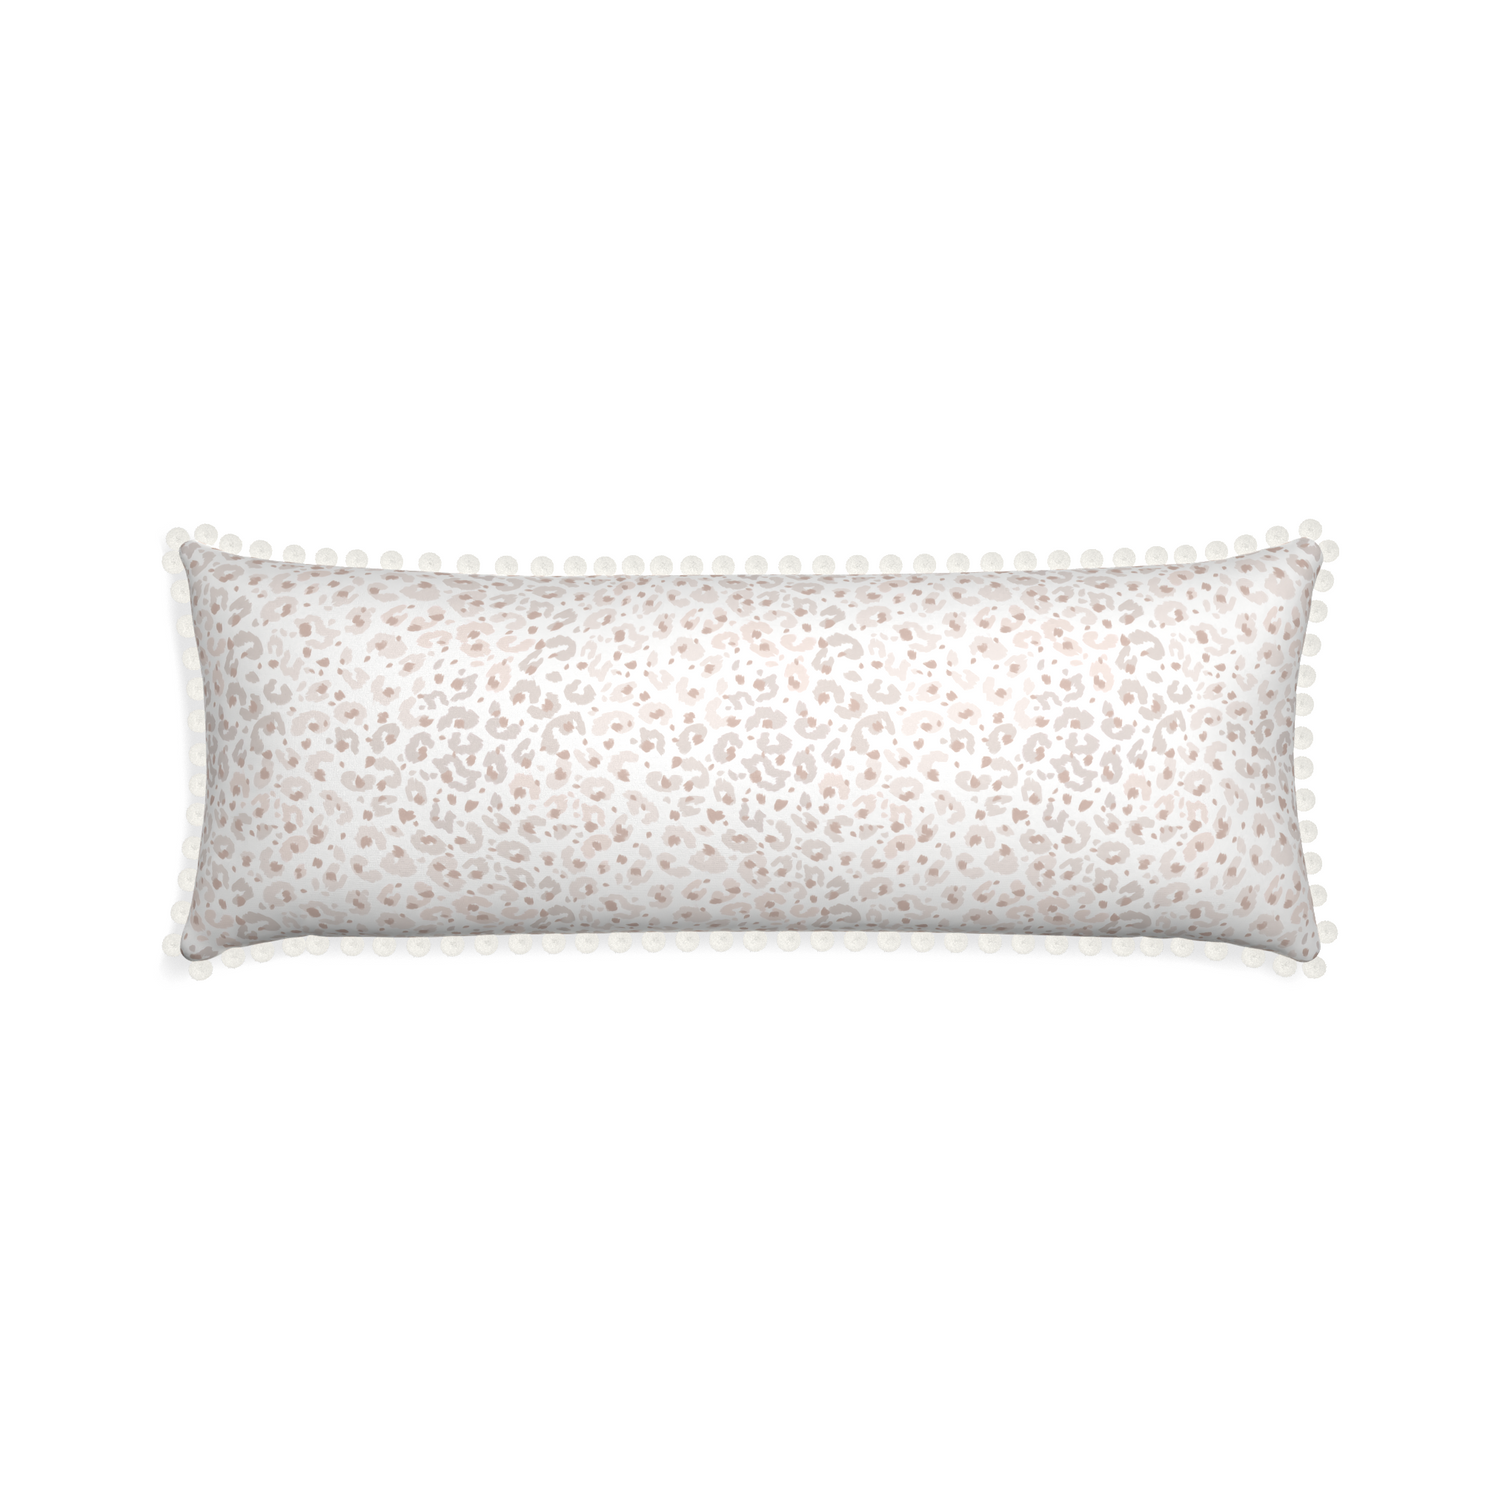 Xl-lumbar rosie custom pillow with snow pom pom on white background